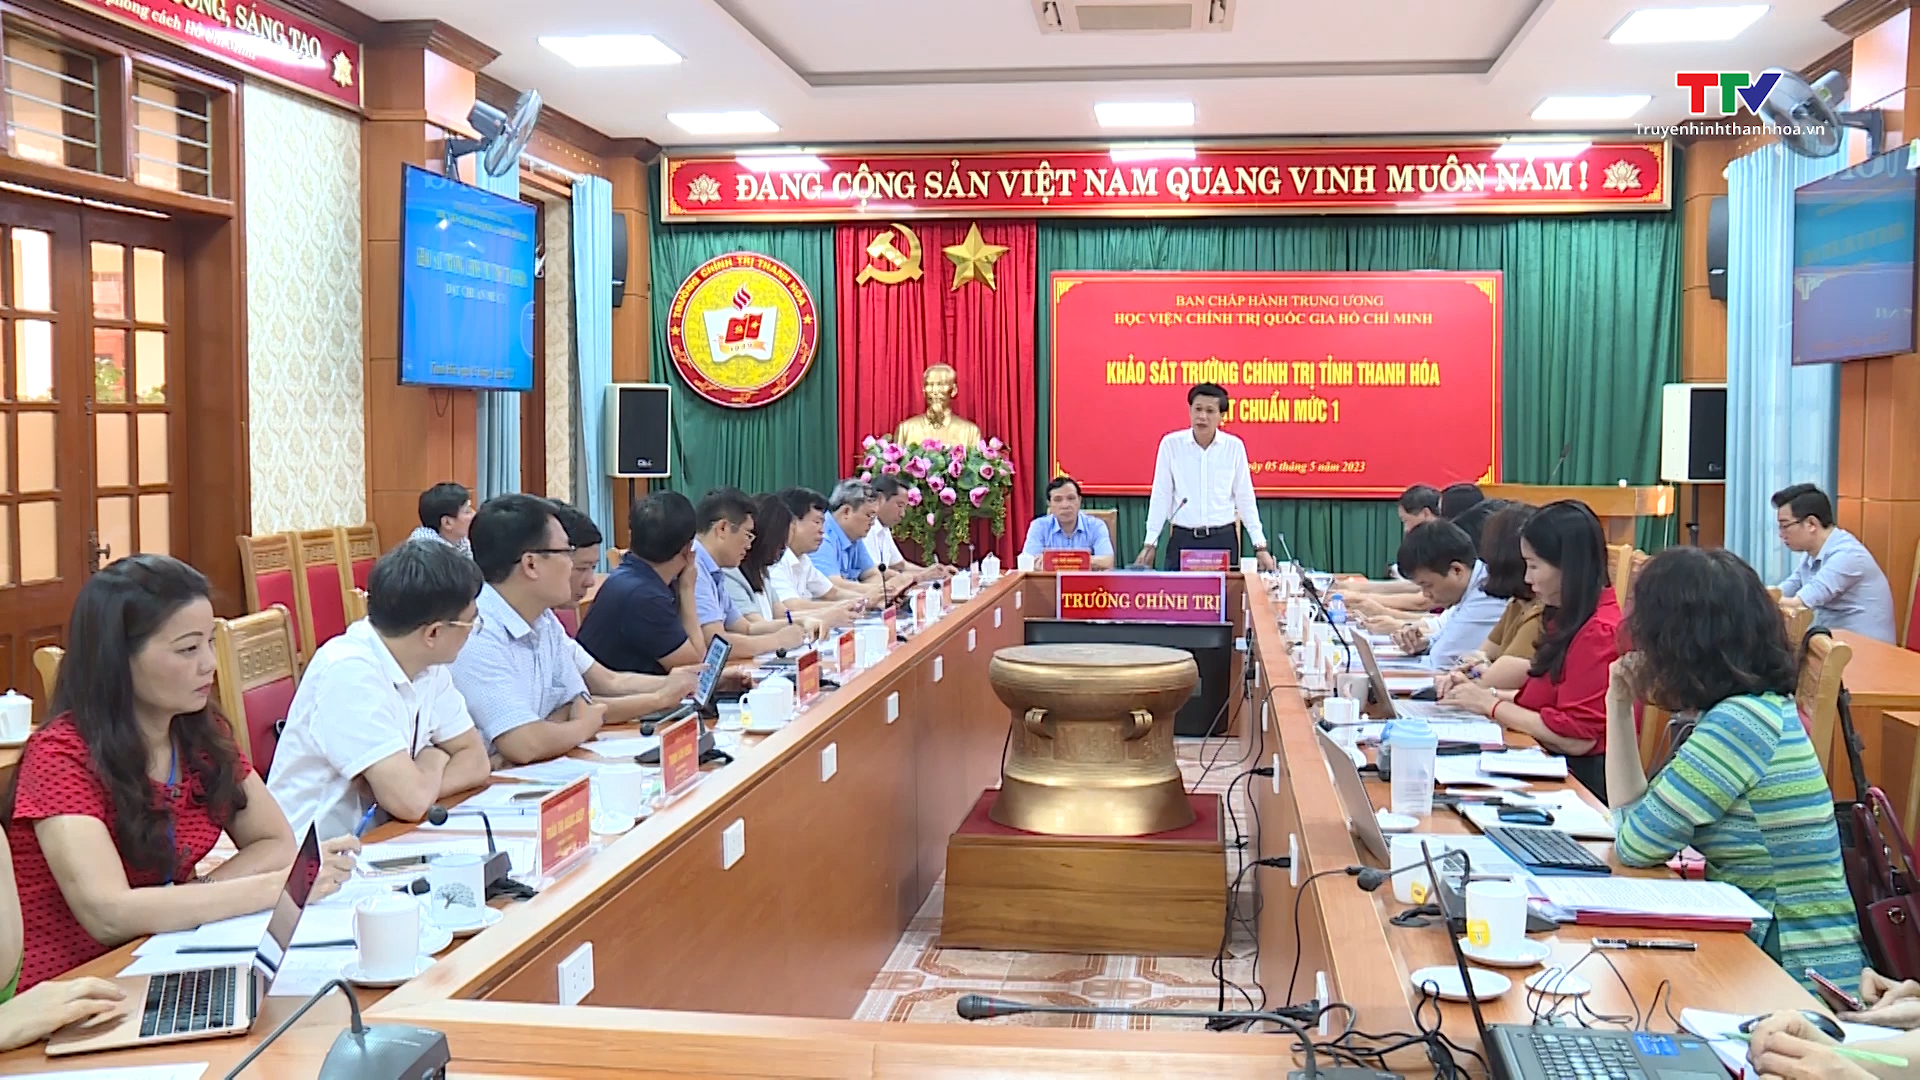 Trường Chính trị tỉnh Thanh Hoá có 6/6 tiêu chí với 55/55 chỉ tiêu đạt trường chuẩn mức độ 1 - Ảnh 4.